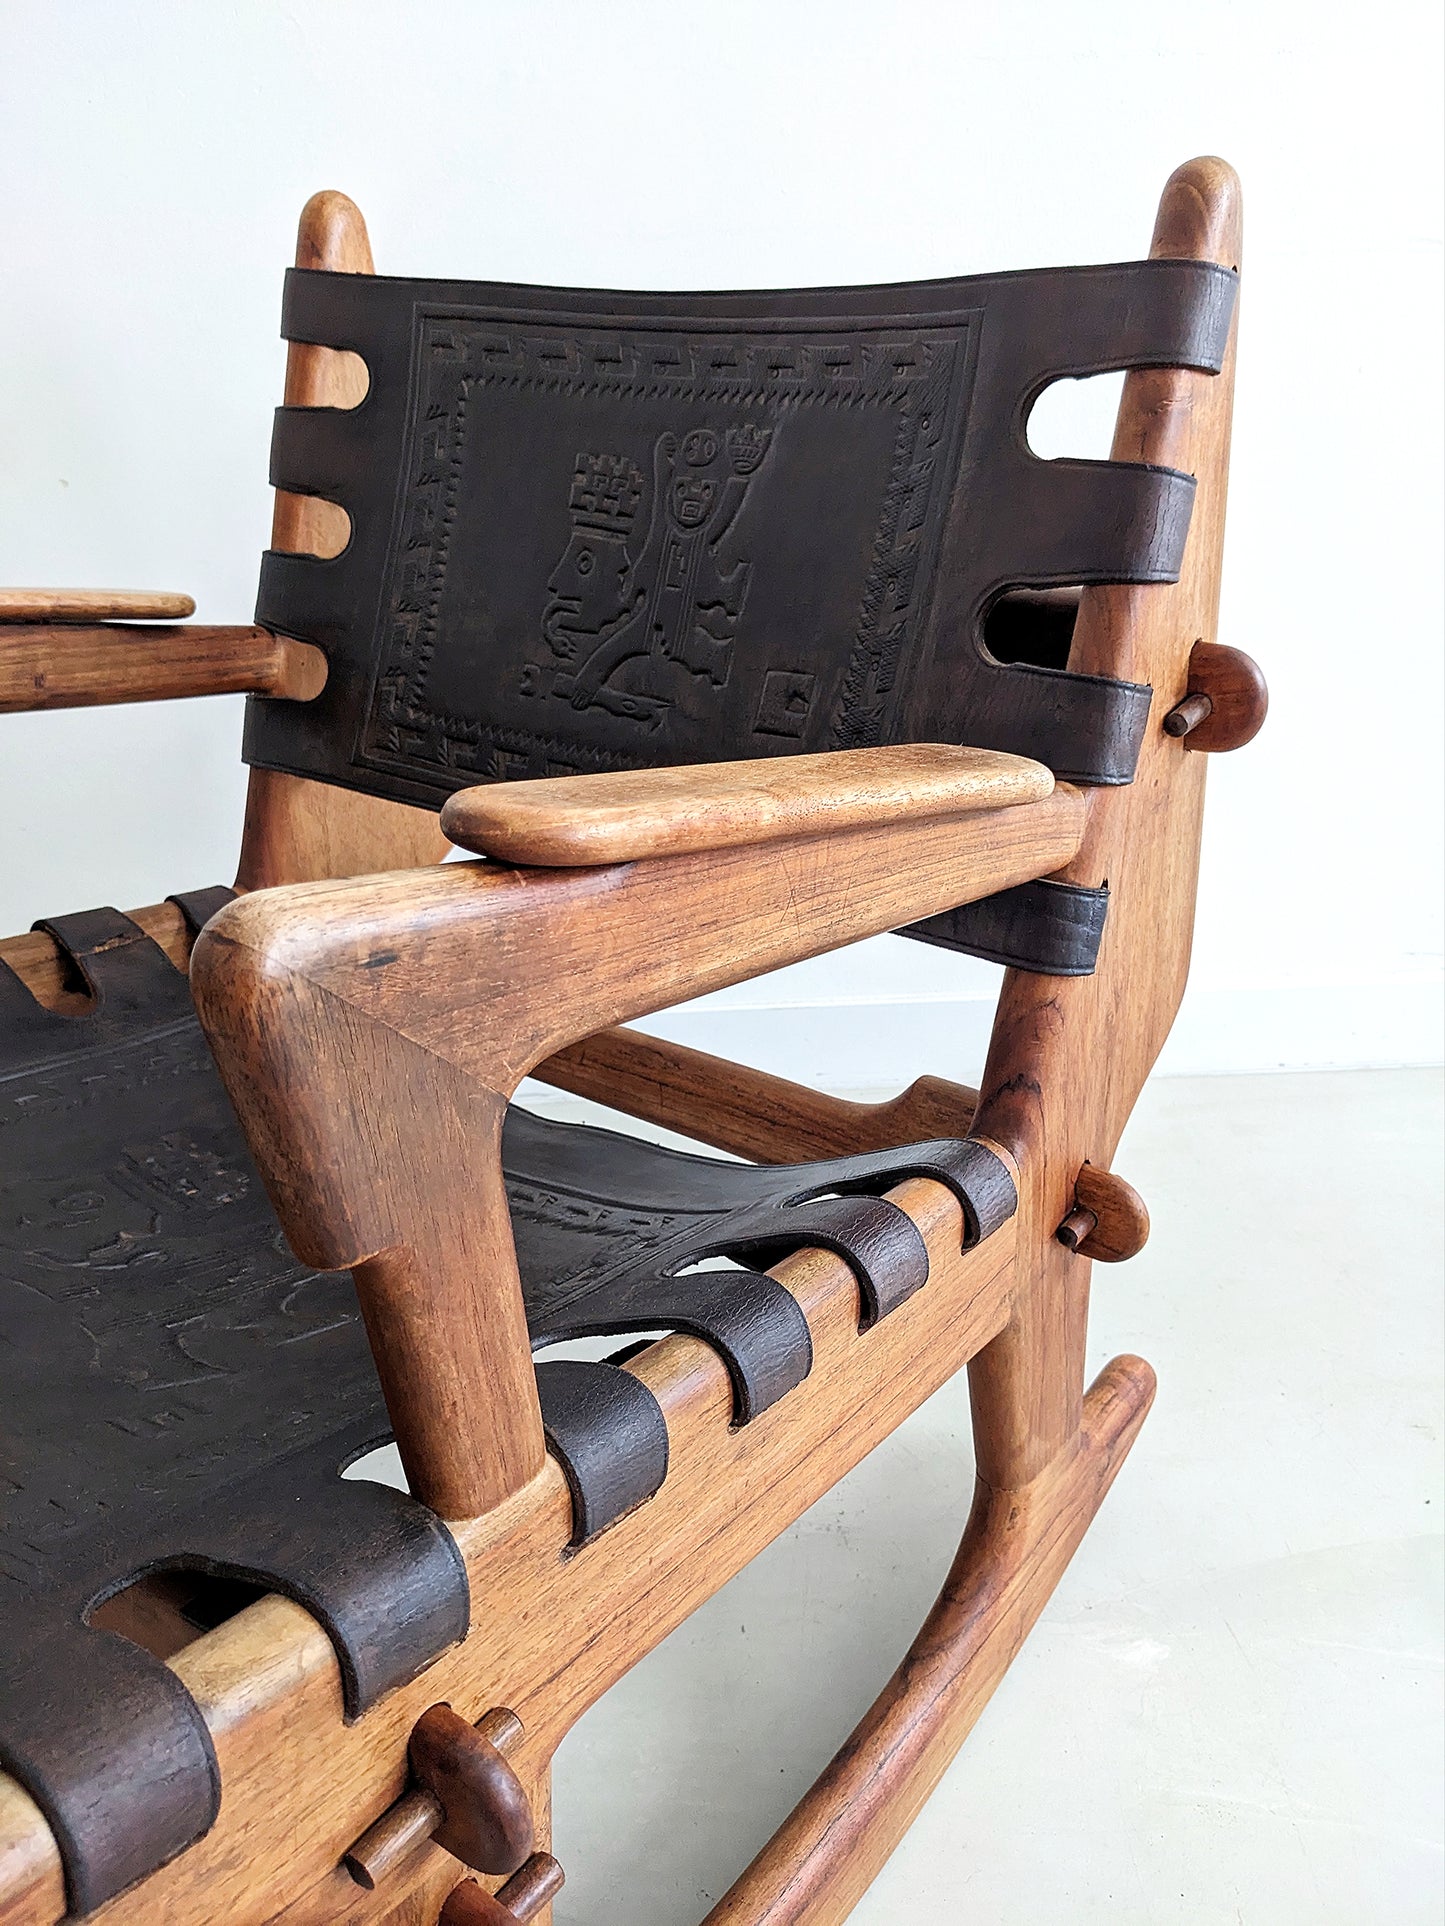 Sculptural Rocking Chair by Angel Pazmiño for Muebles de Estilo 1960's